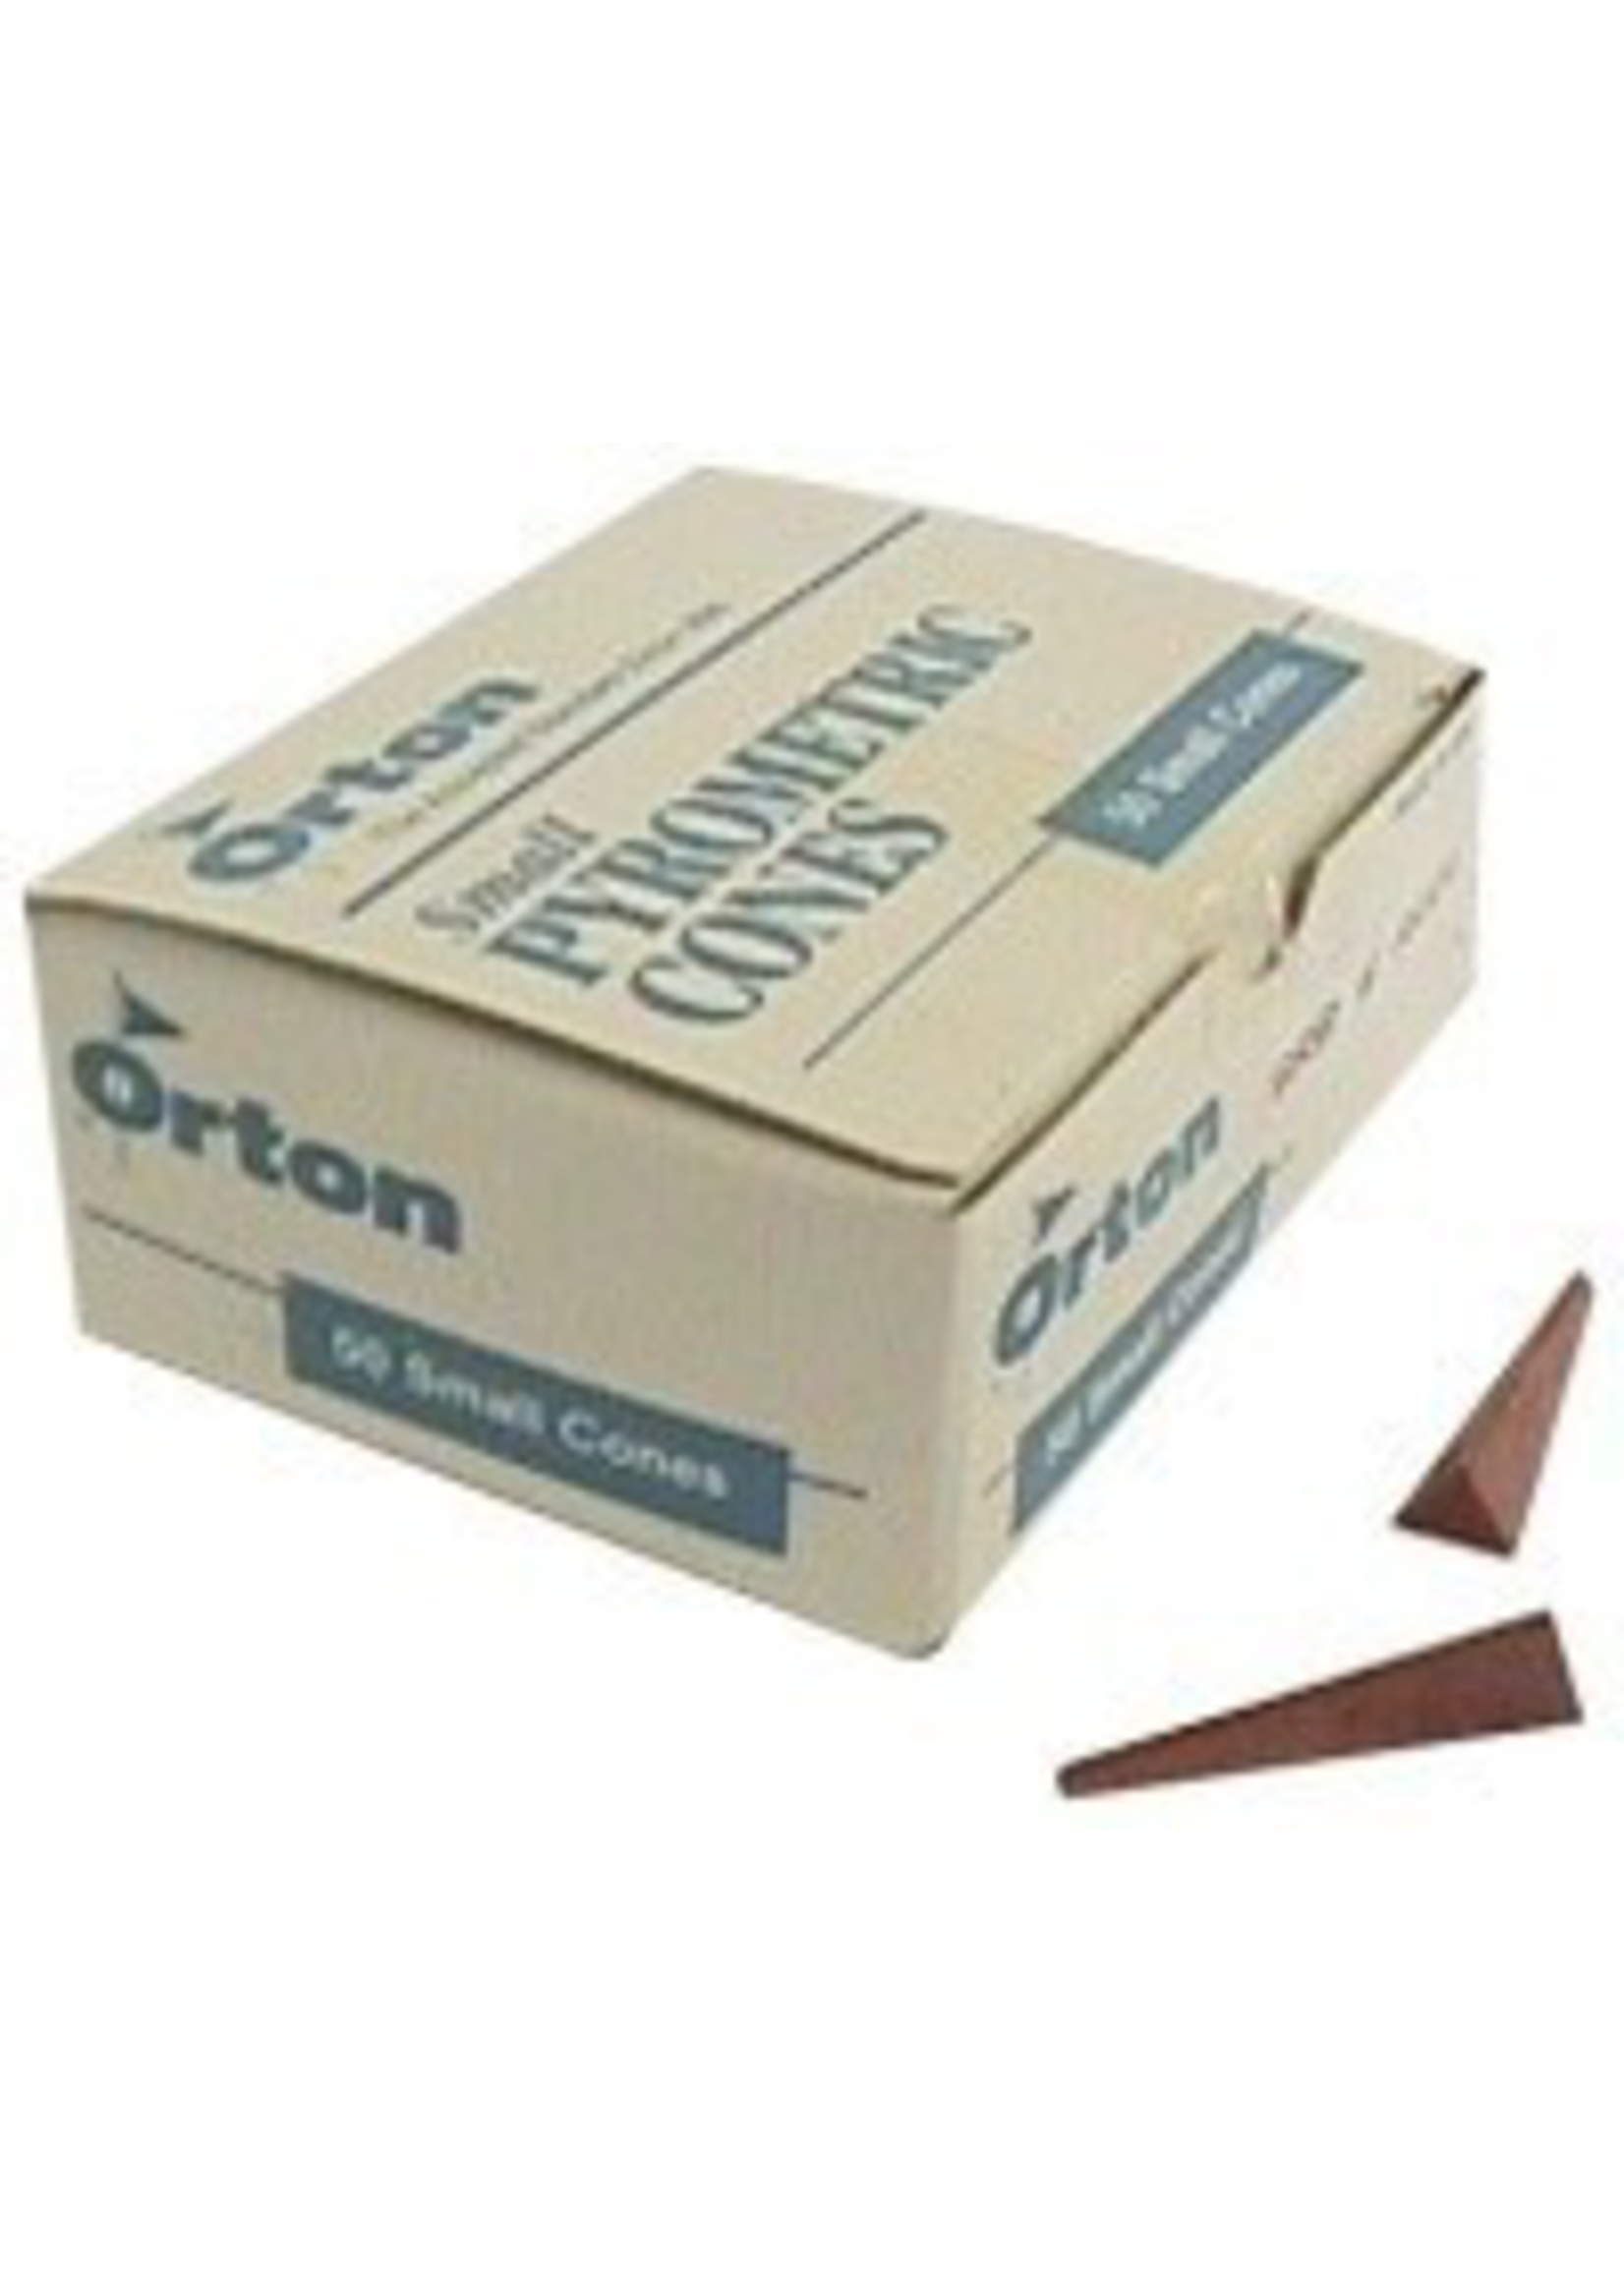 Orton small cone 9 (x50)